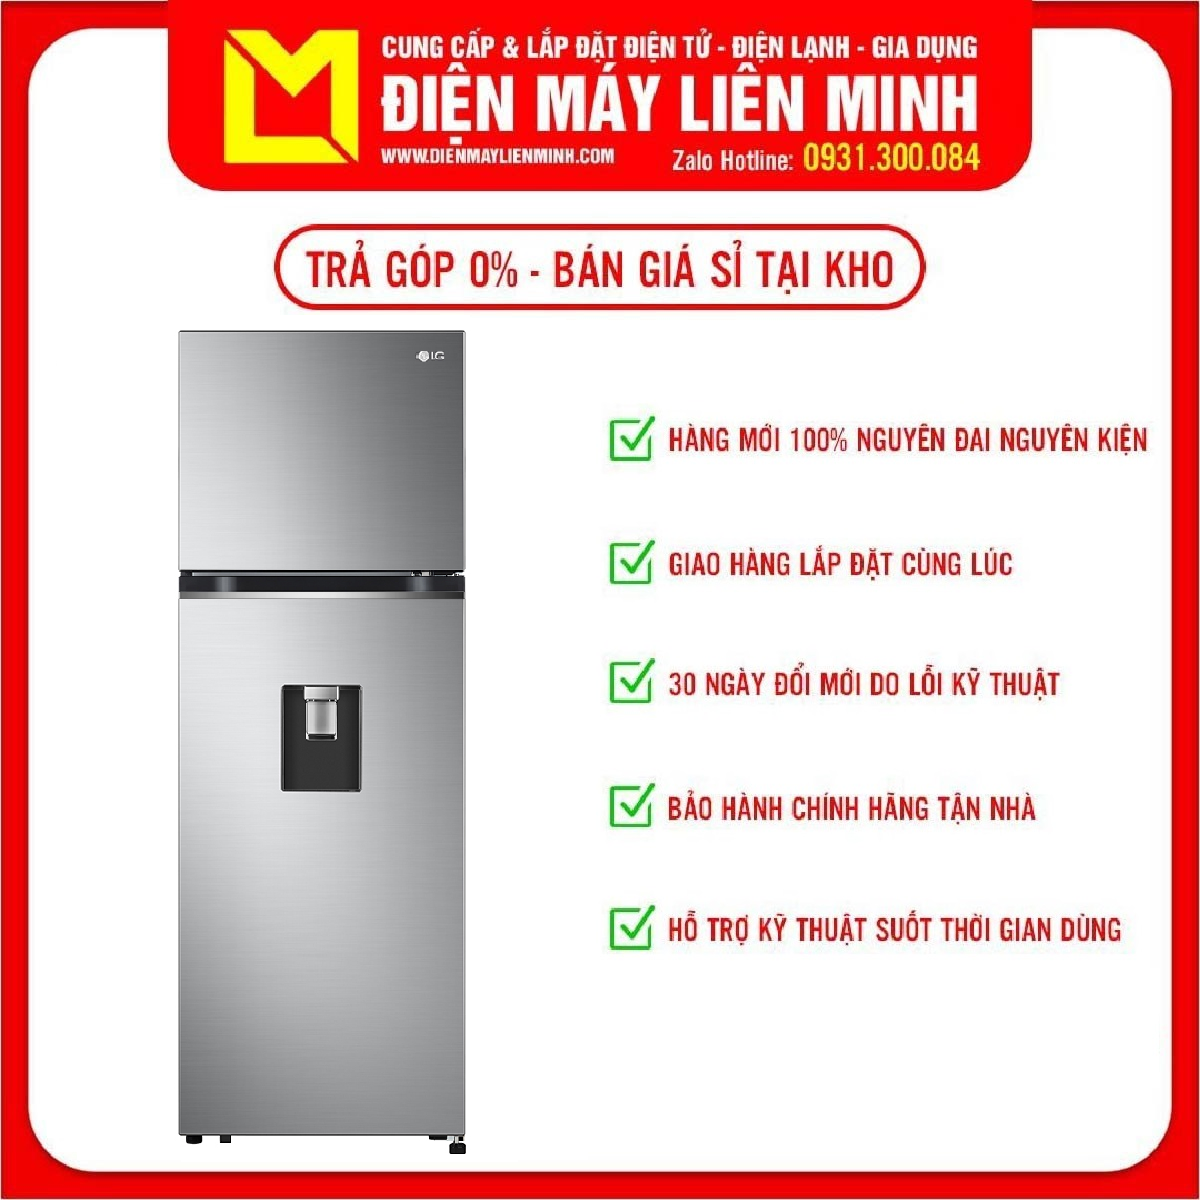 Tủ lạnh LG Inverter 264 lít GV-D262PS Công nghệ làm lạnh Liner Cooling, Lấy nước bên ngoài, Bảo hành 24 Tháng – giao hàng miễn phí HCM